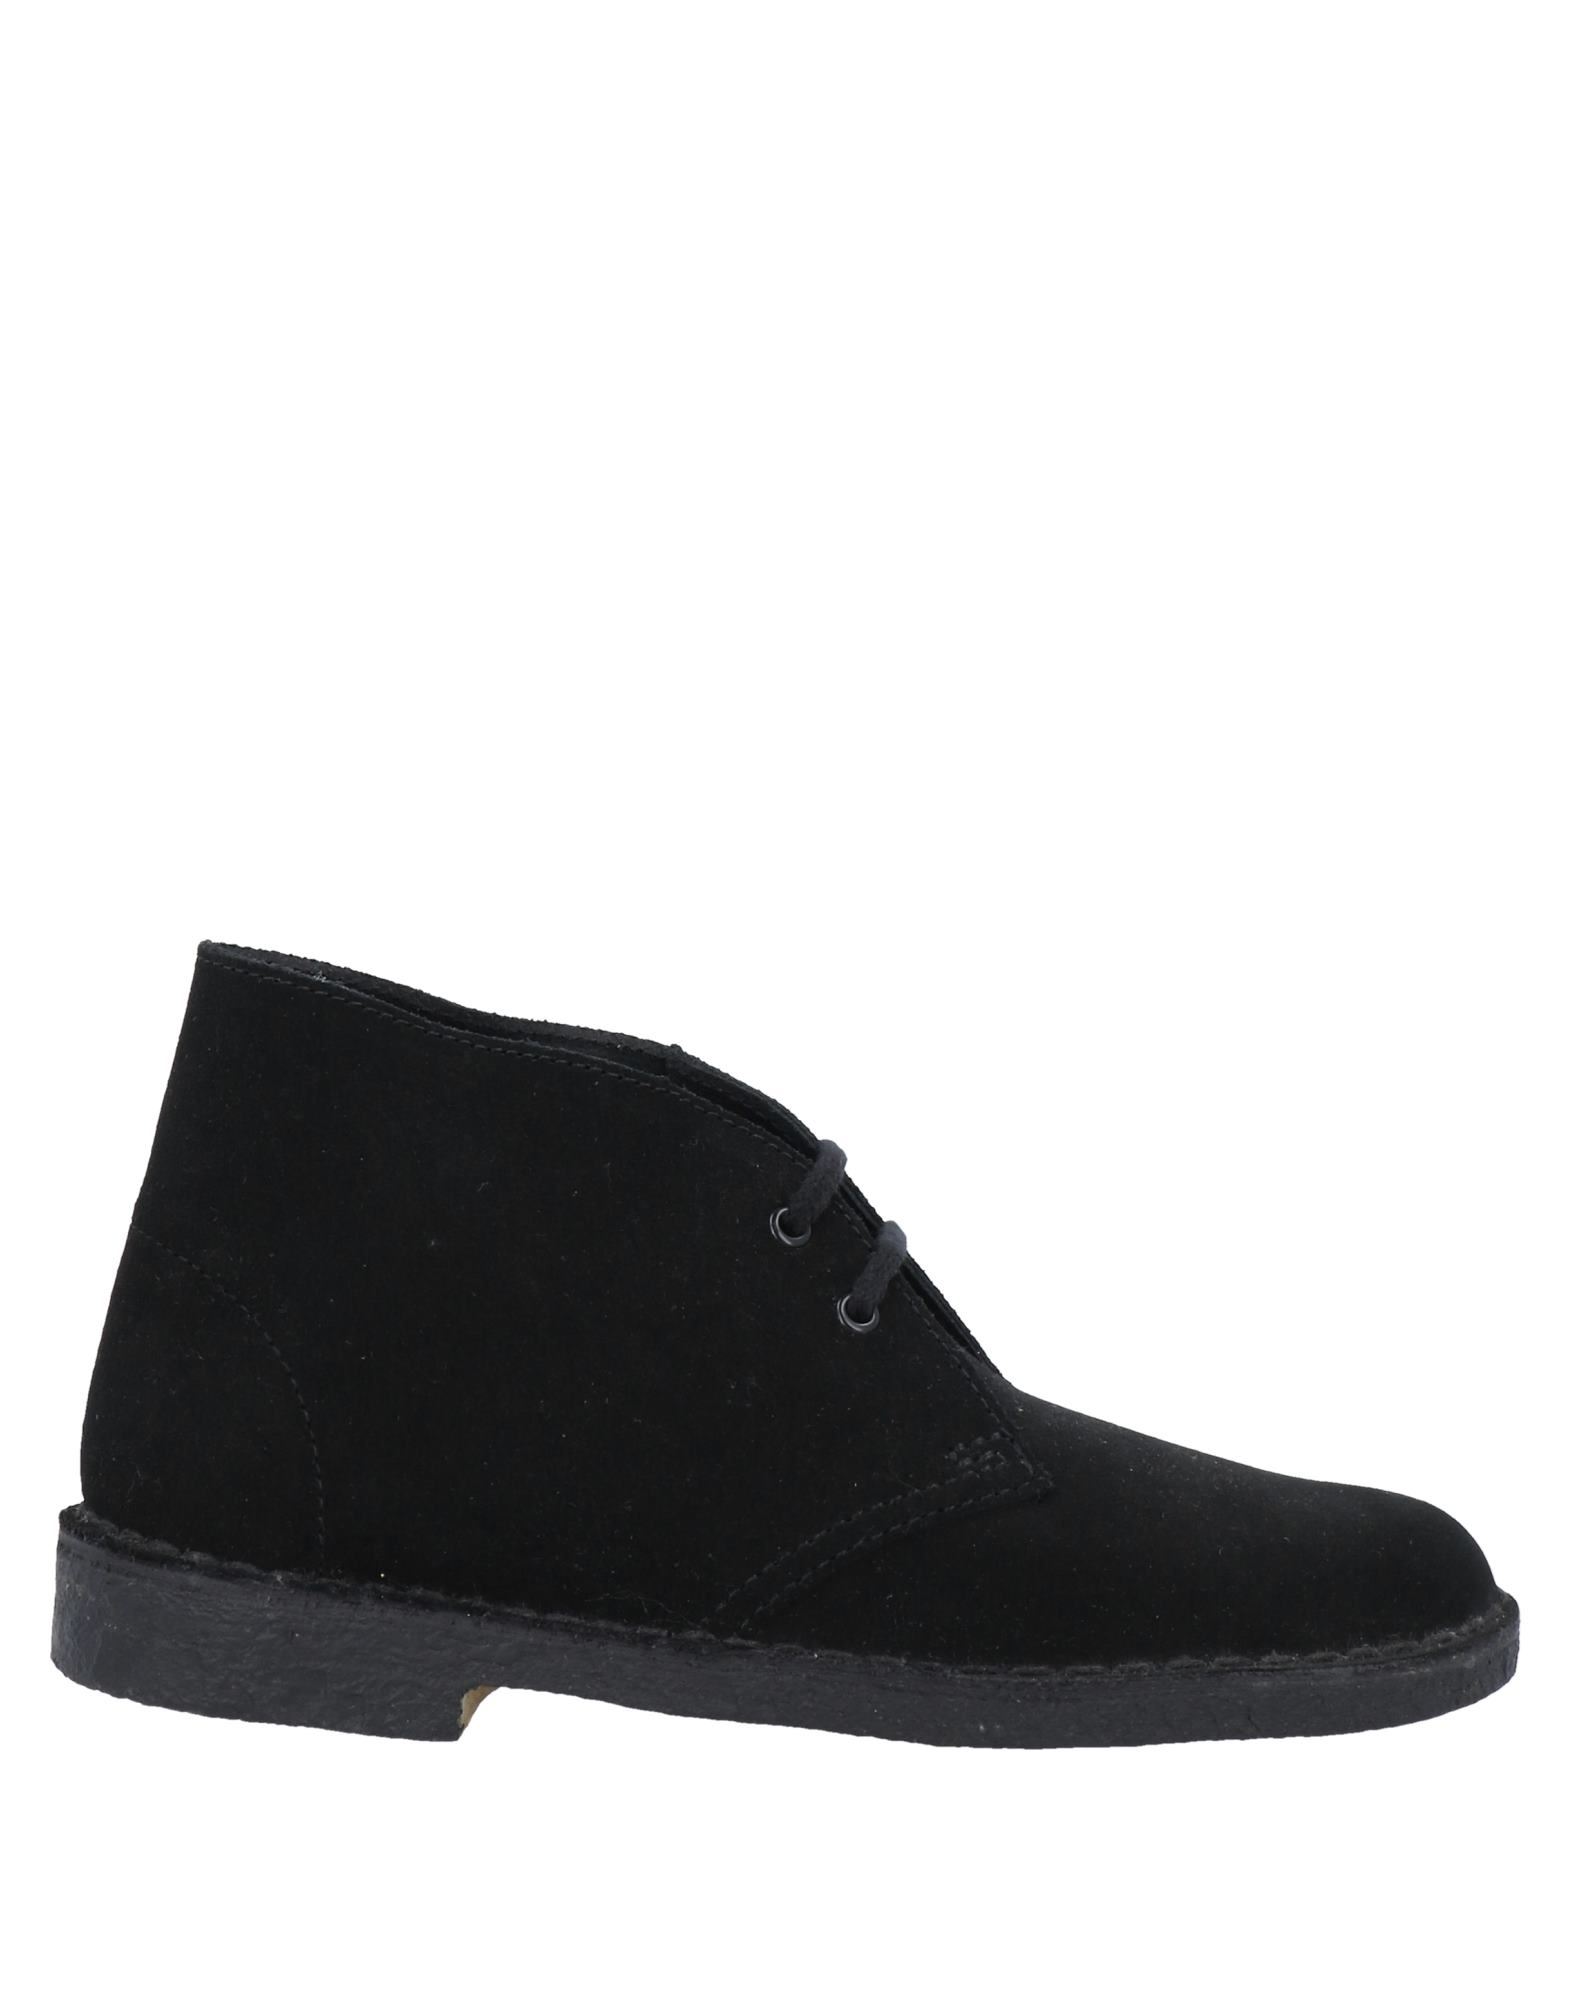 Shop Clarks Originals Woman Ankle Boots Black Size 6.5 Soft Leather